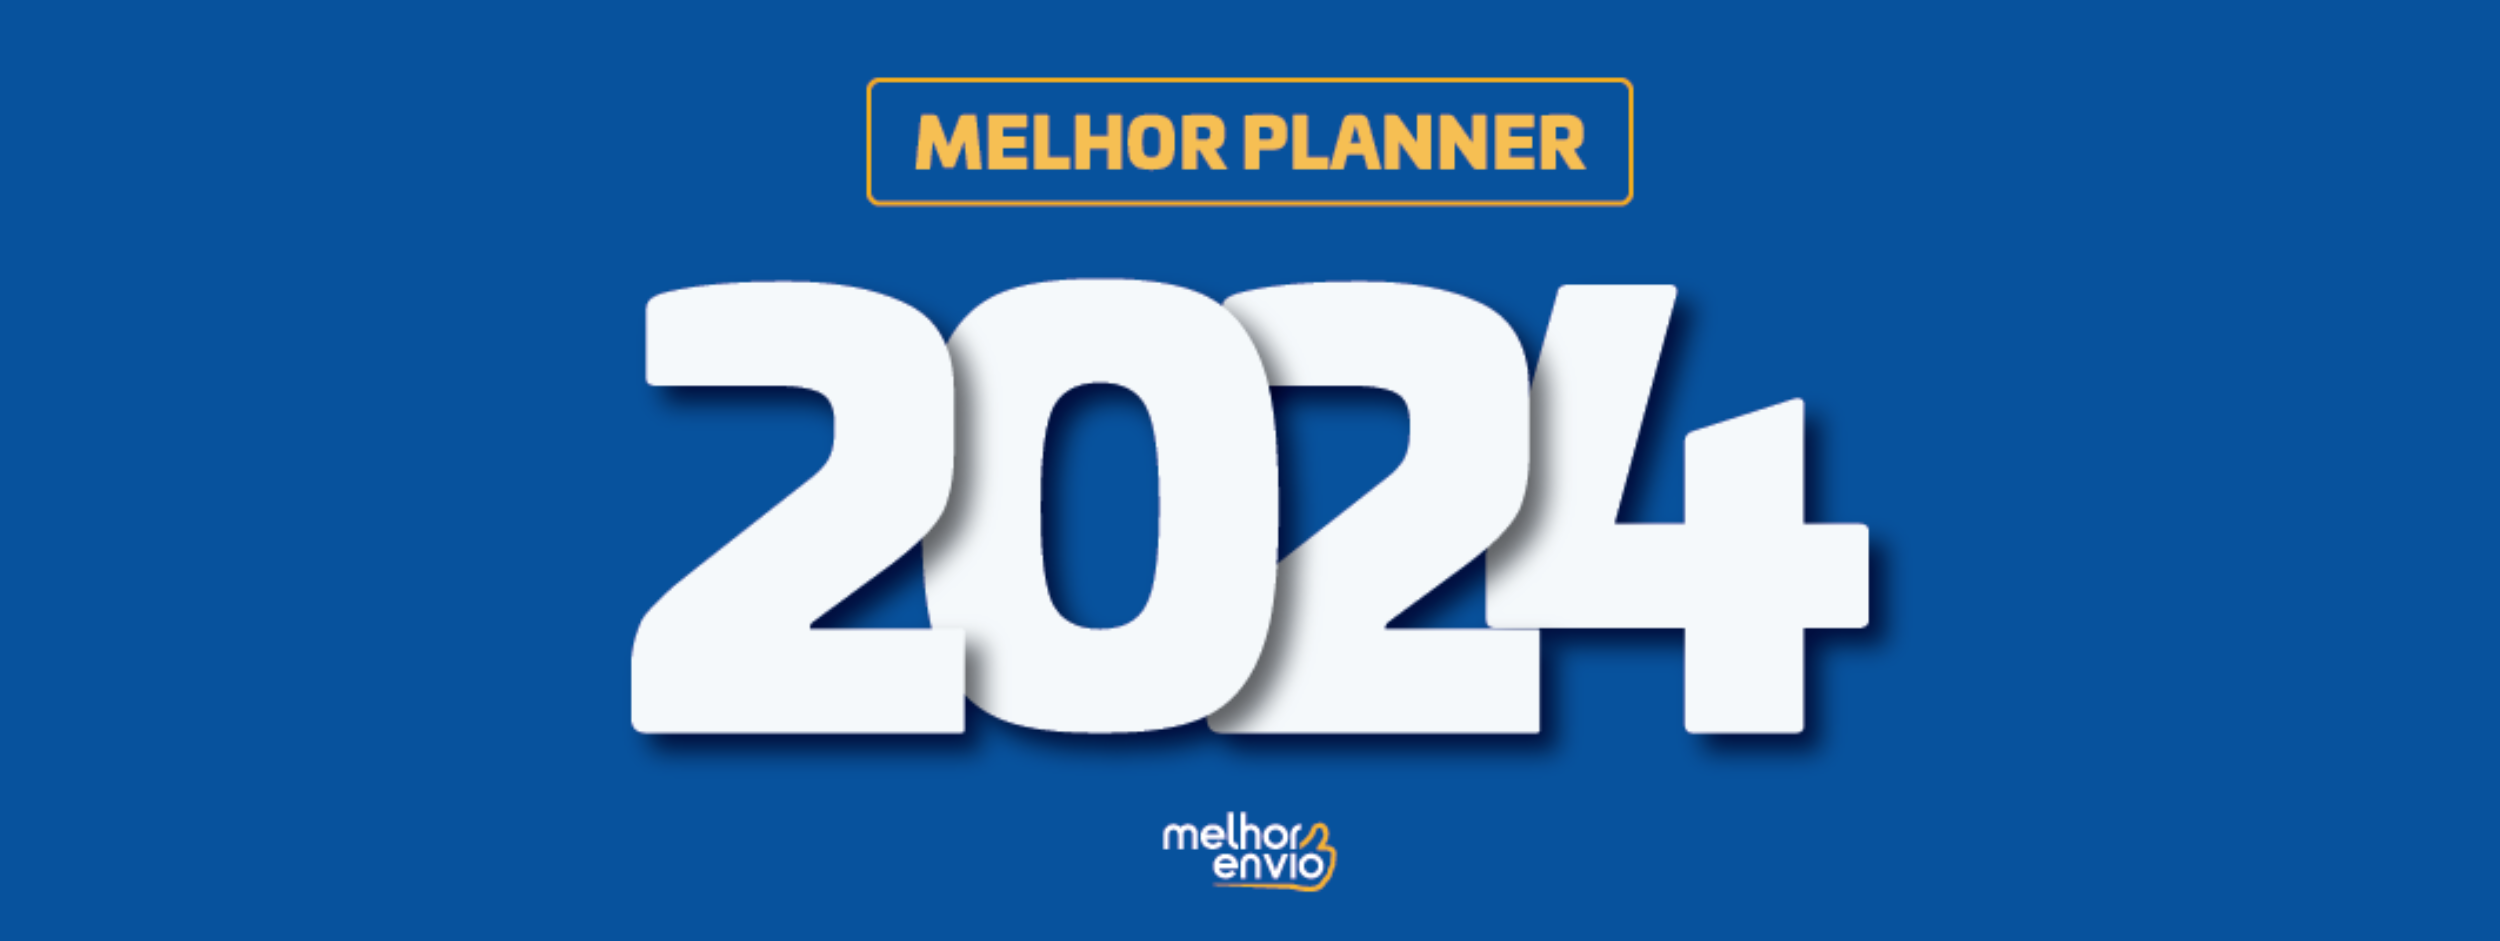 Planner 2024 – Mensal, Semanal, Diário e mais